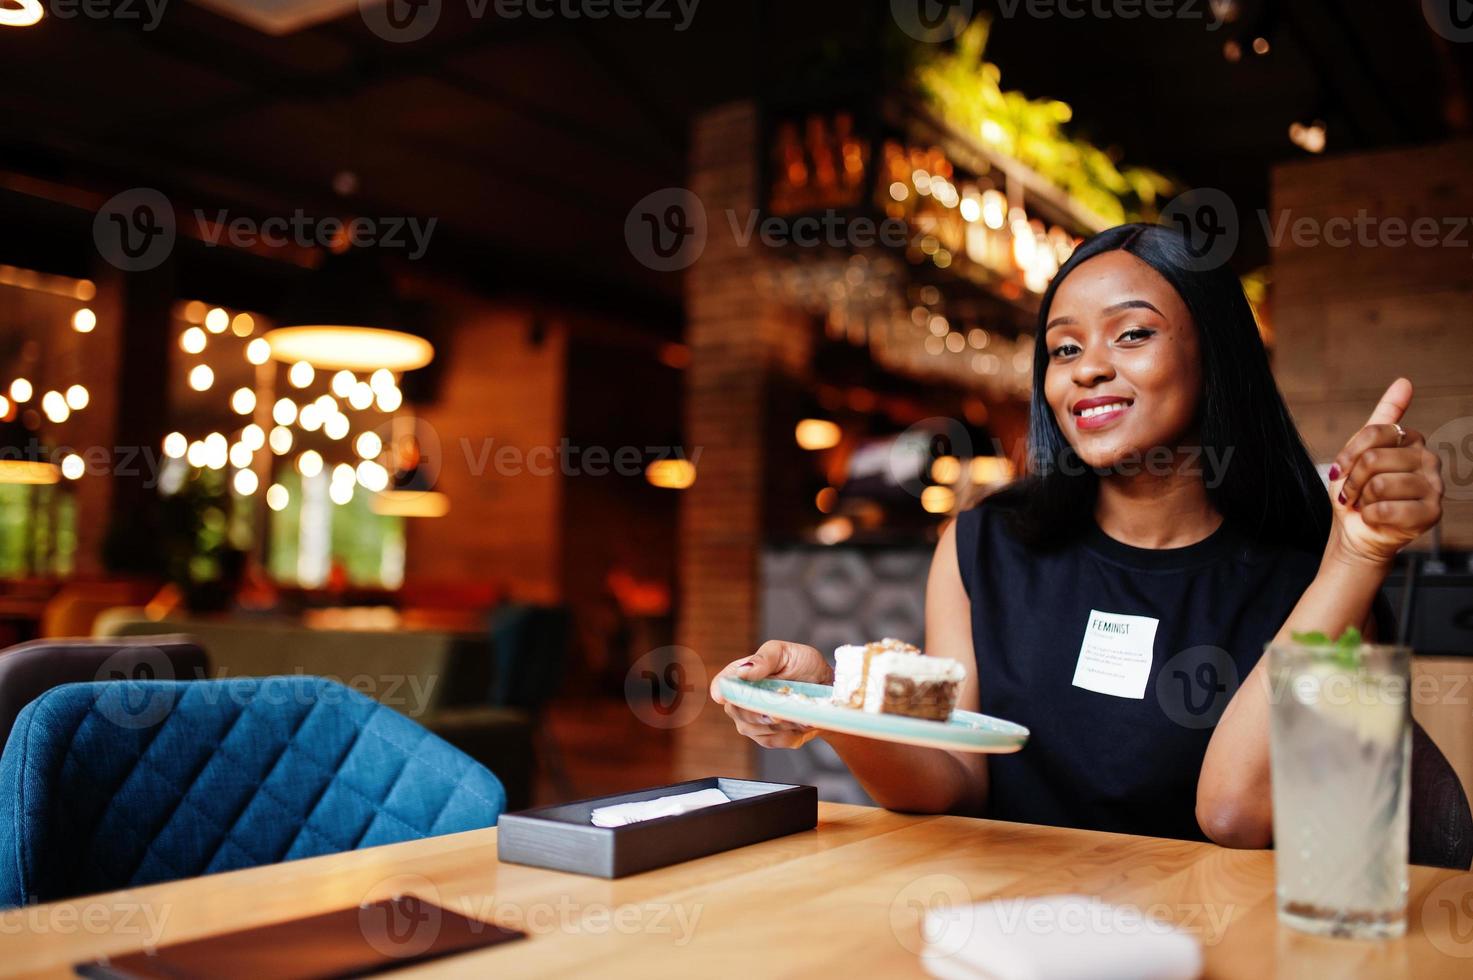 mulher afro-americana feminista na moda usa camiseta preta e shorts, posou no restaurante, come bolo de queijo. foto